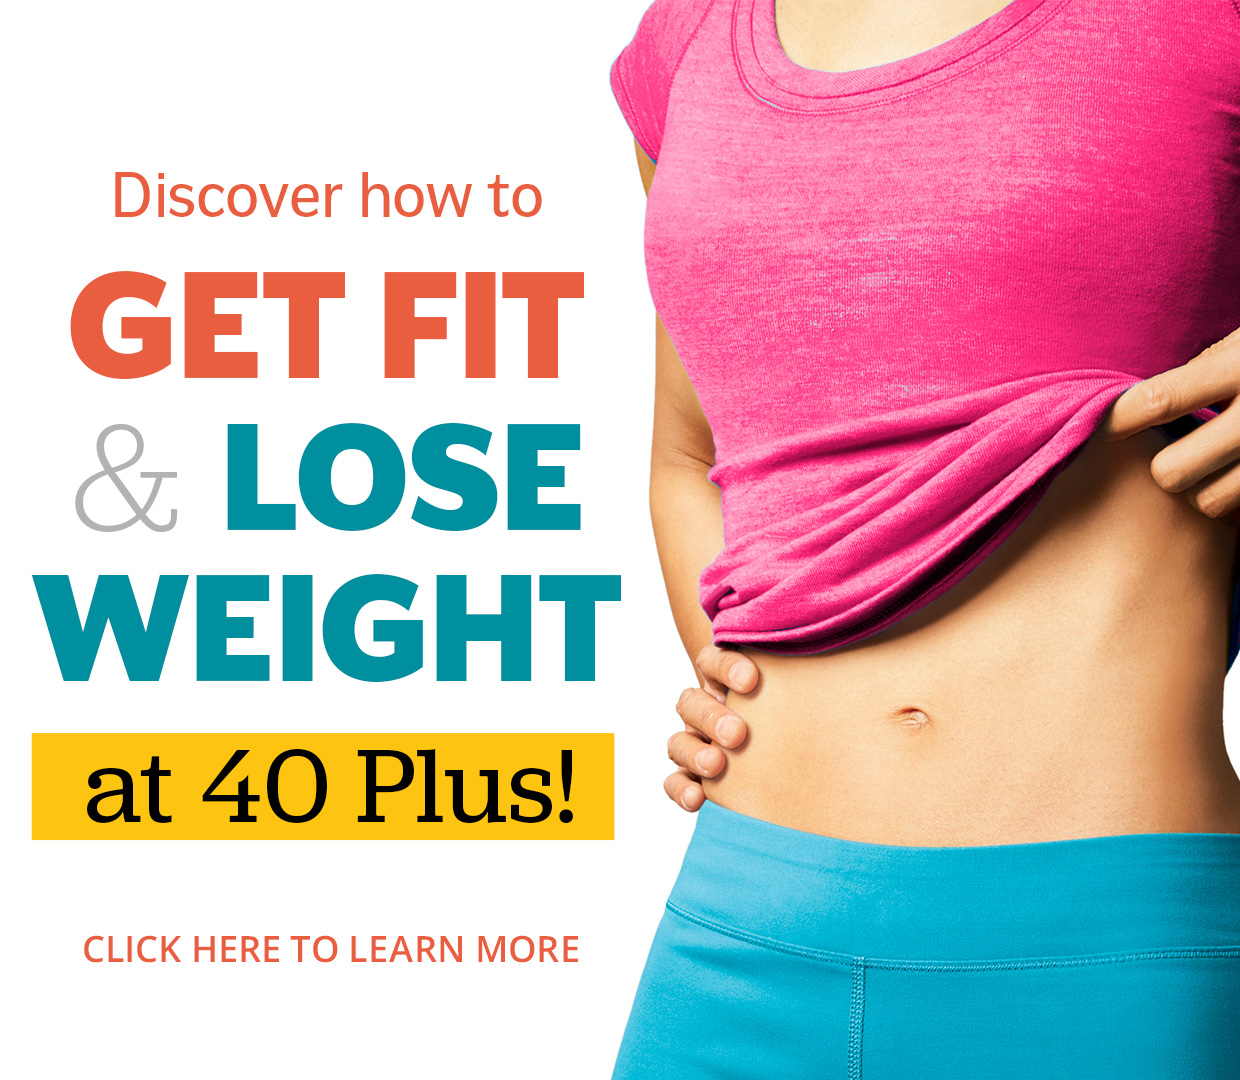 Lose Fat & Get Toned at 40 Plus!